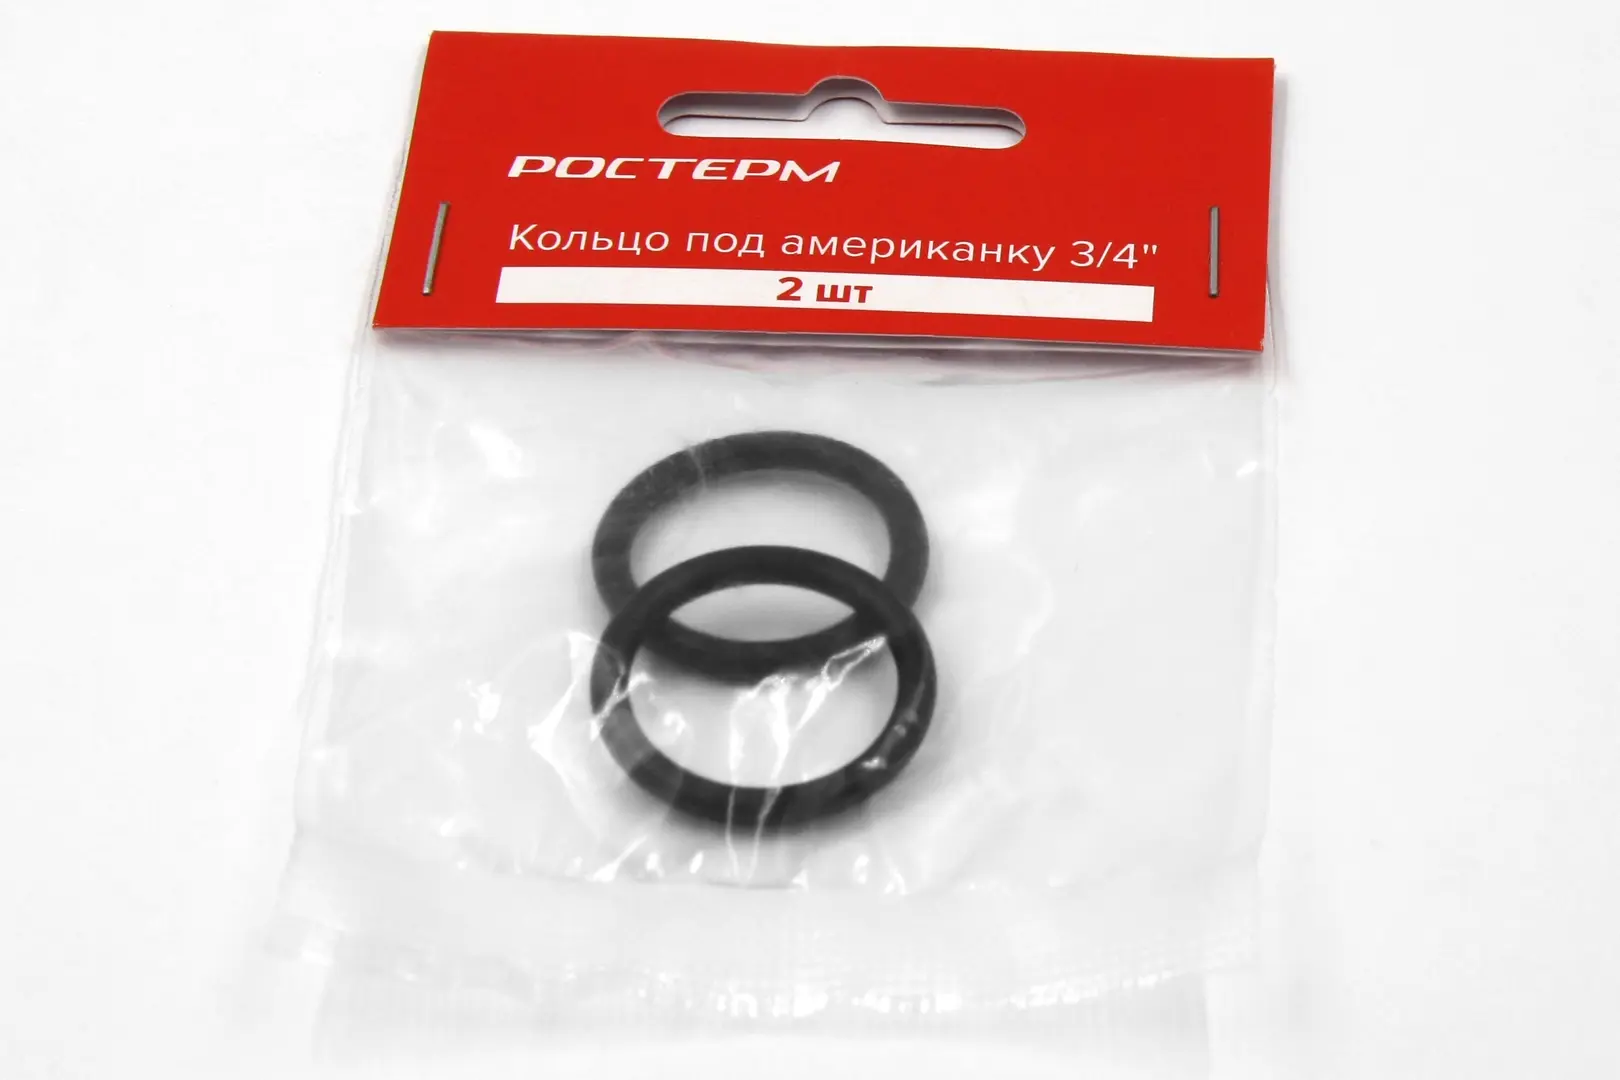 Кольцо под американку Ростерм 20 мм 2 штуки цвет чёрный кольцо крепёжное oxion для патрона е27 цвет чёрный